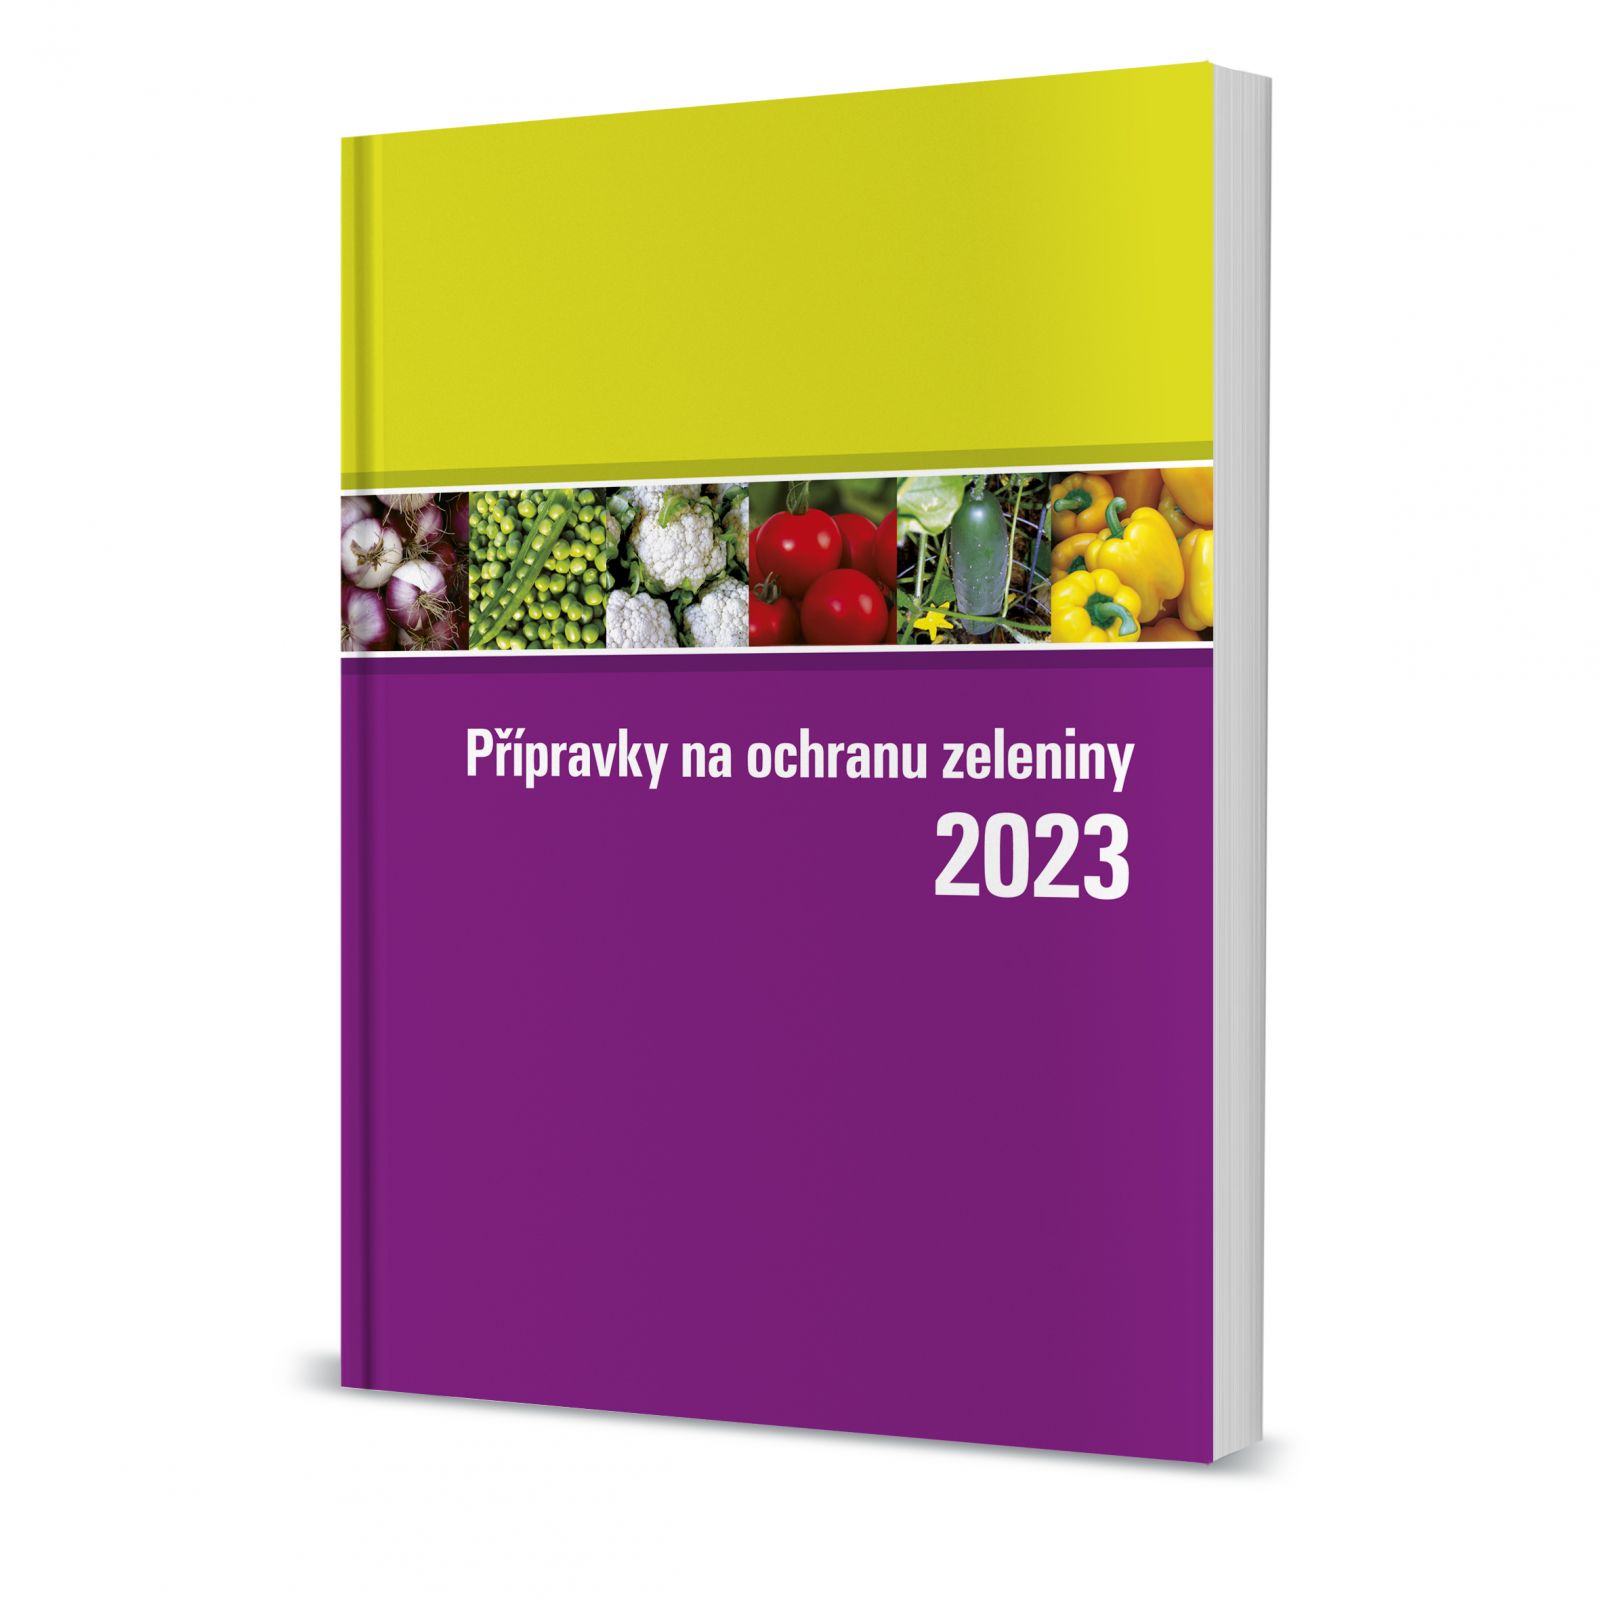 Katalog přípravků na ochranu zeleniny 2023